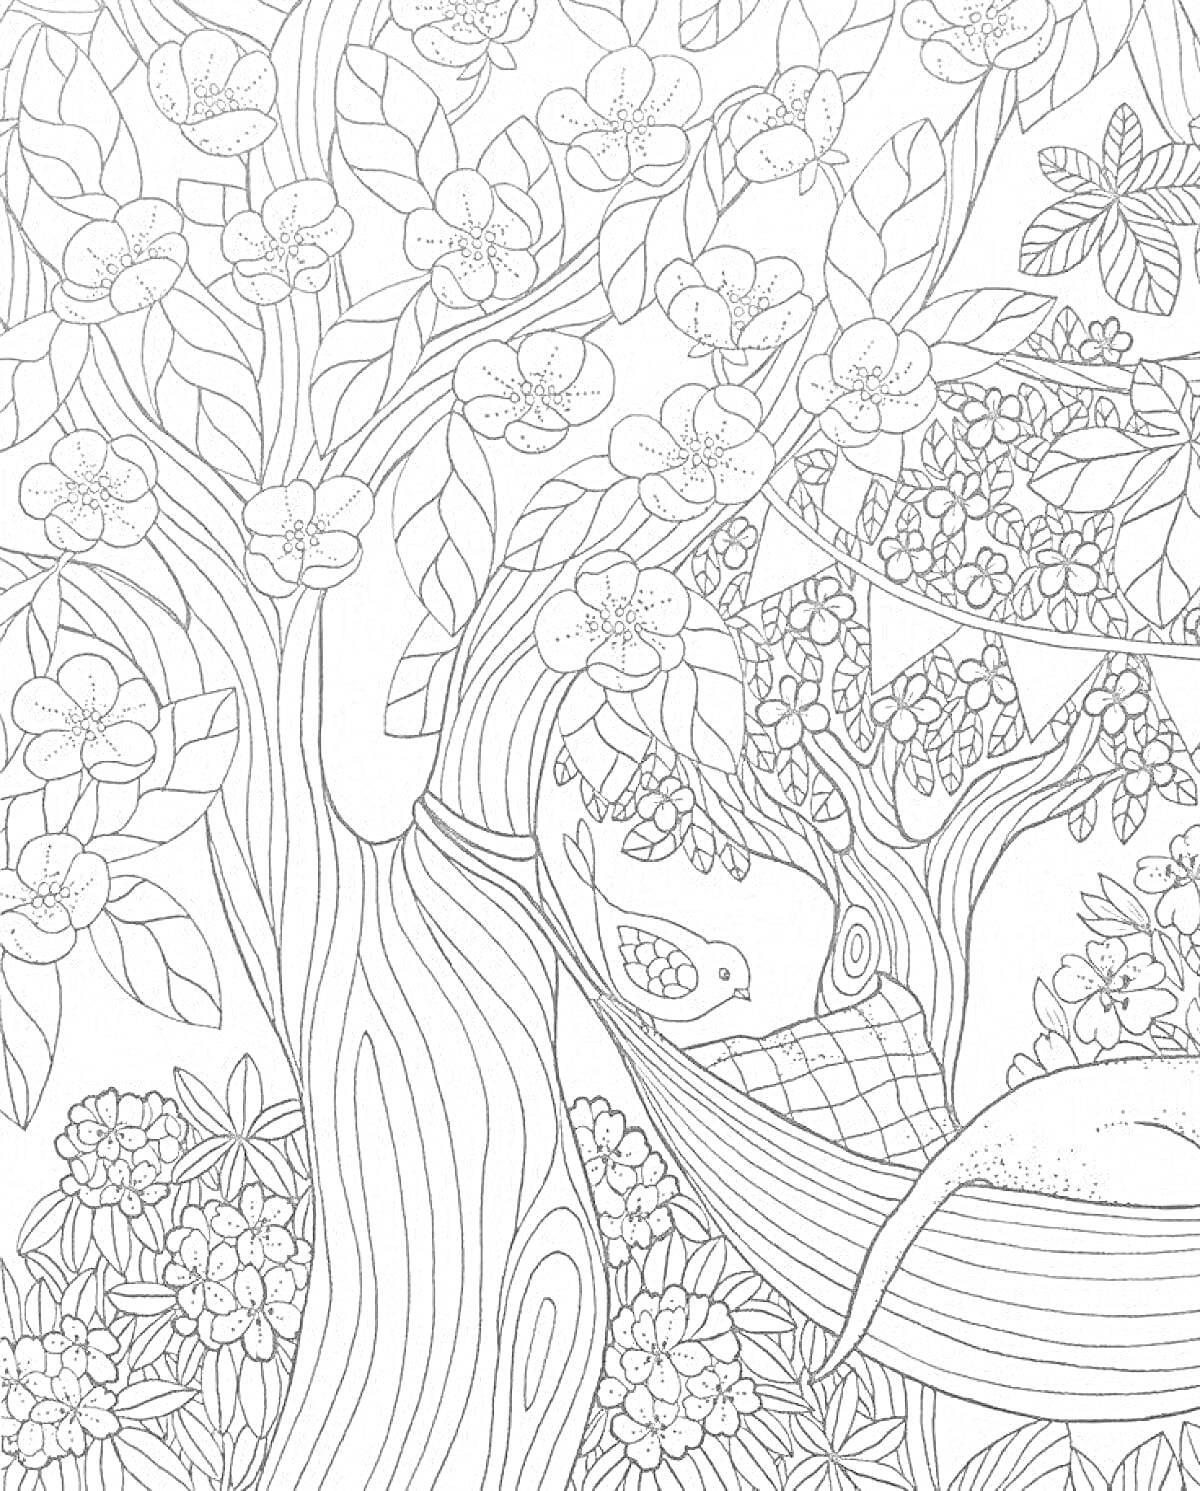 Раскраска Дерево с цветами и листьями, девушка в гамаке, птица, флажки, цветущие кустарники